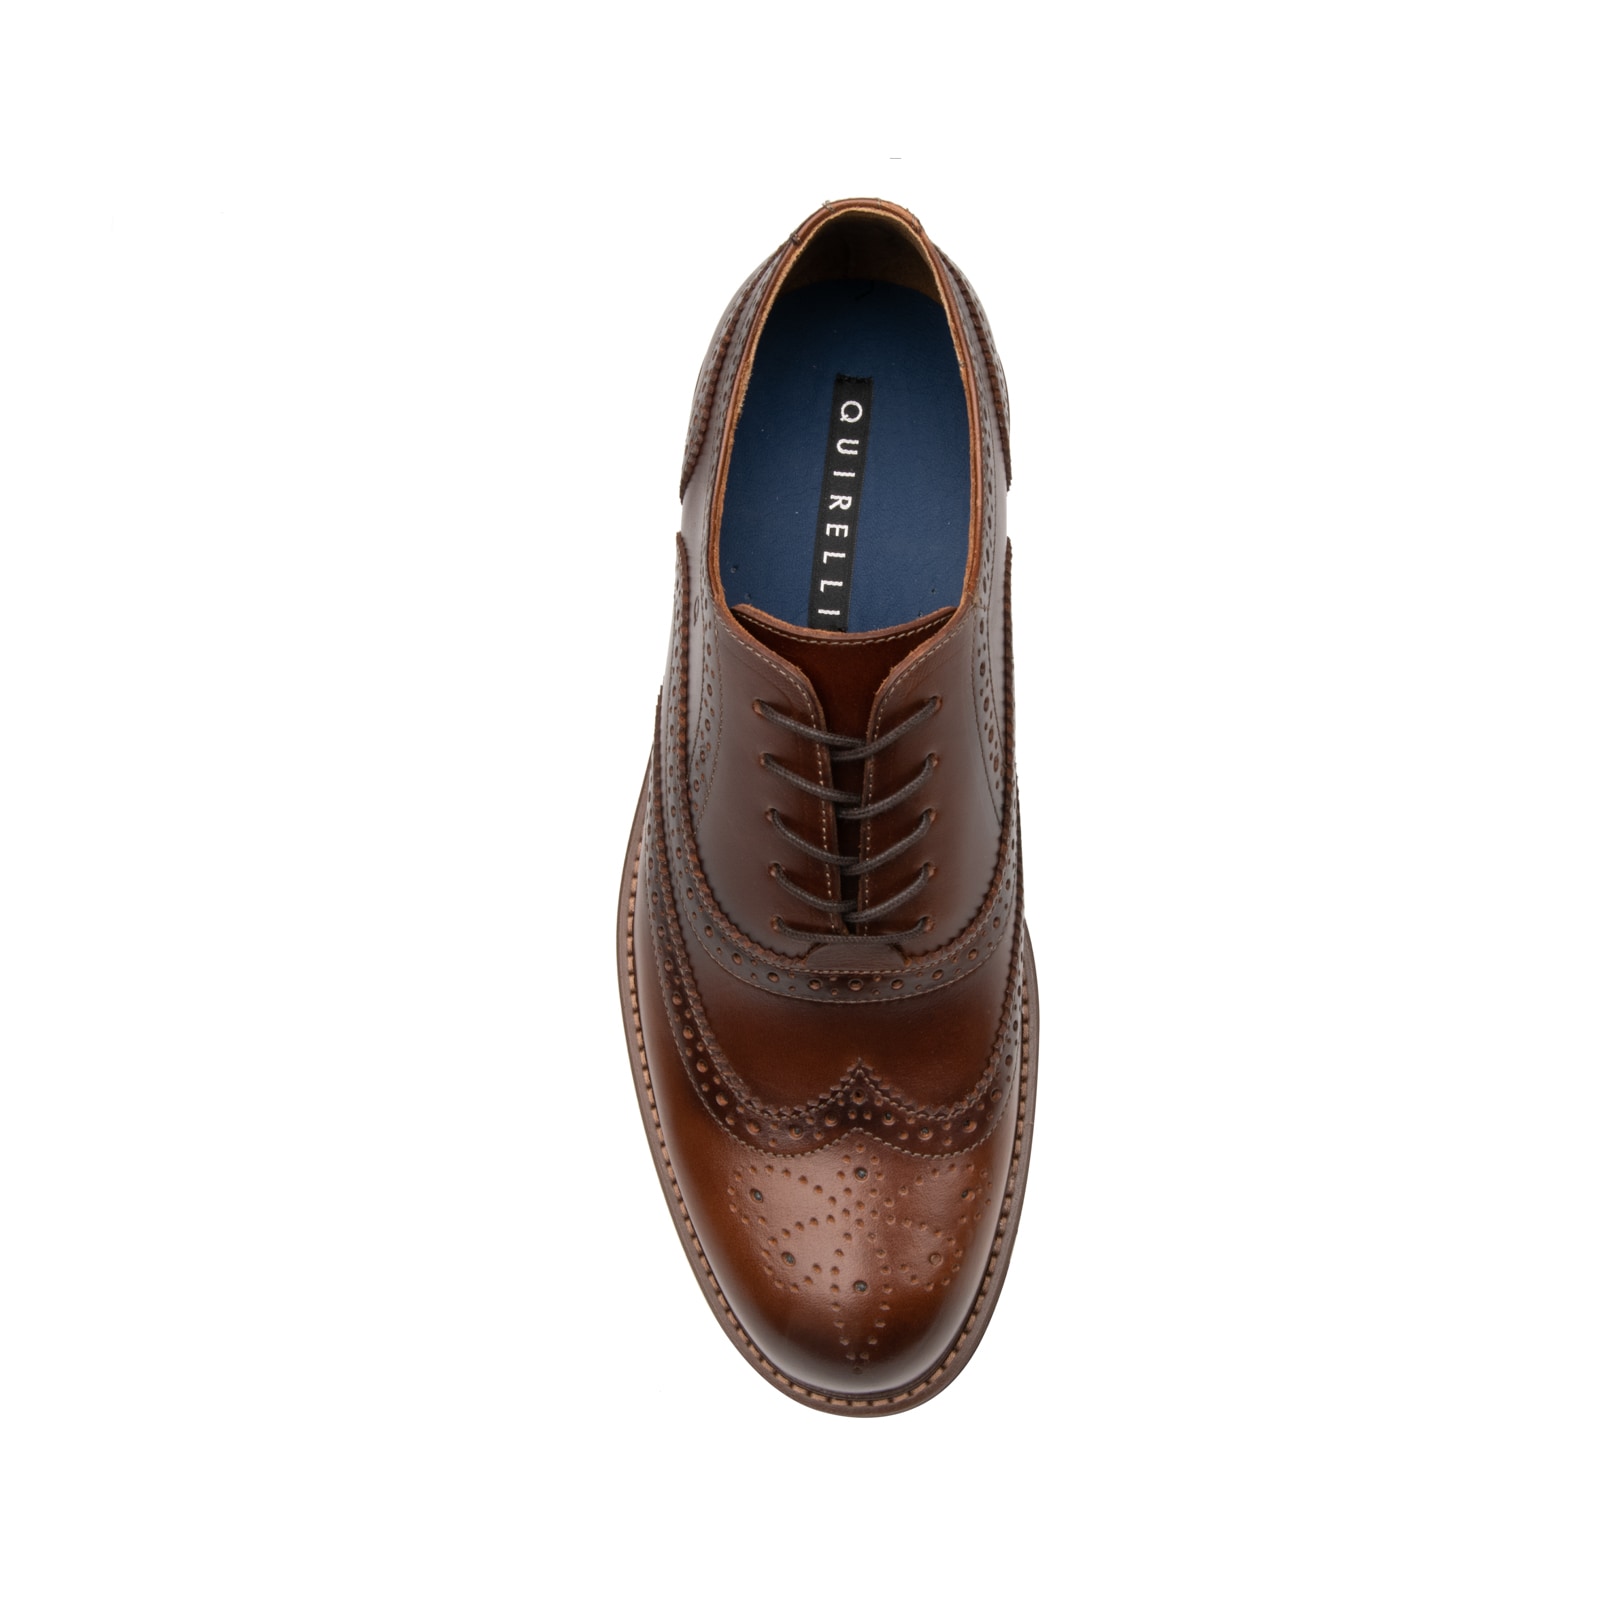 Zapato Bostoniano Quirelli para Hombre con suela con contraste Estilo 88602 Cognac | Flexi Tienda Oficial en Línea